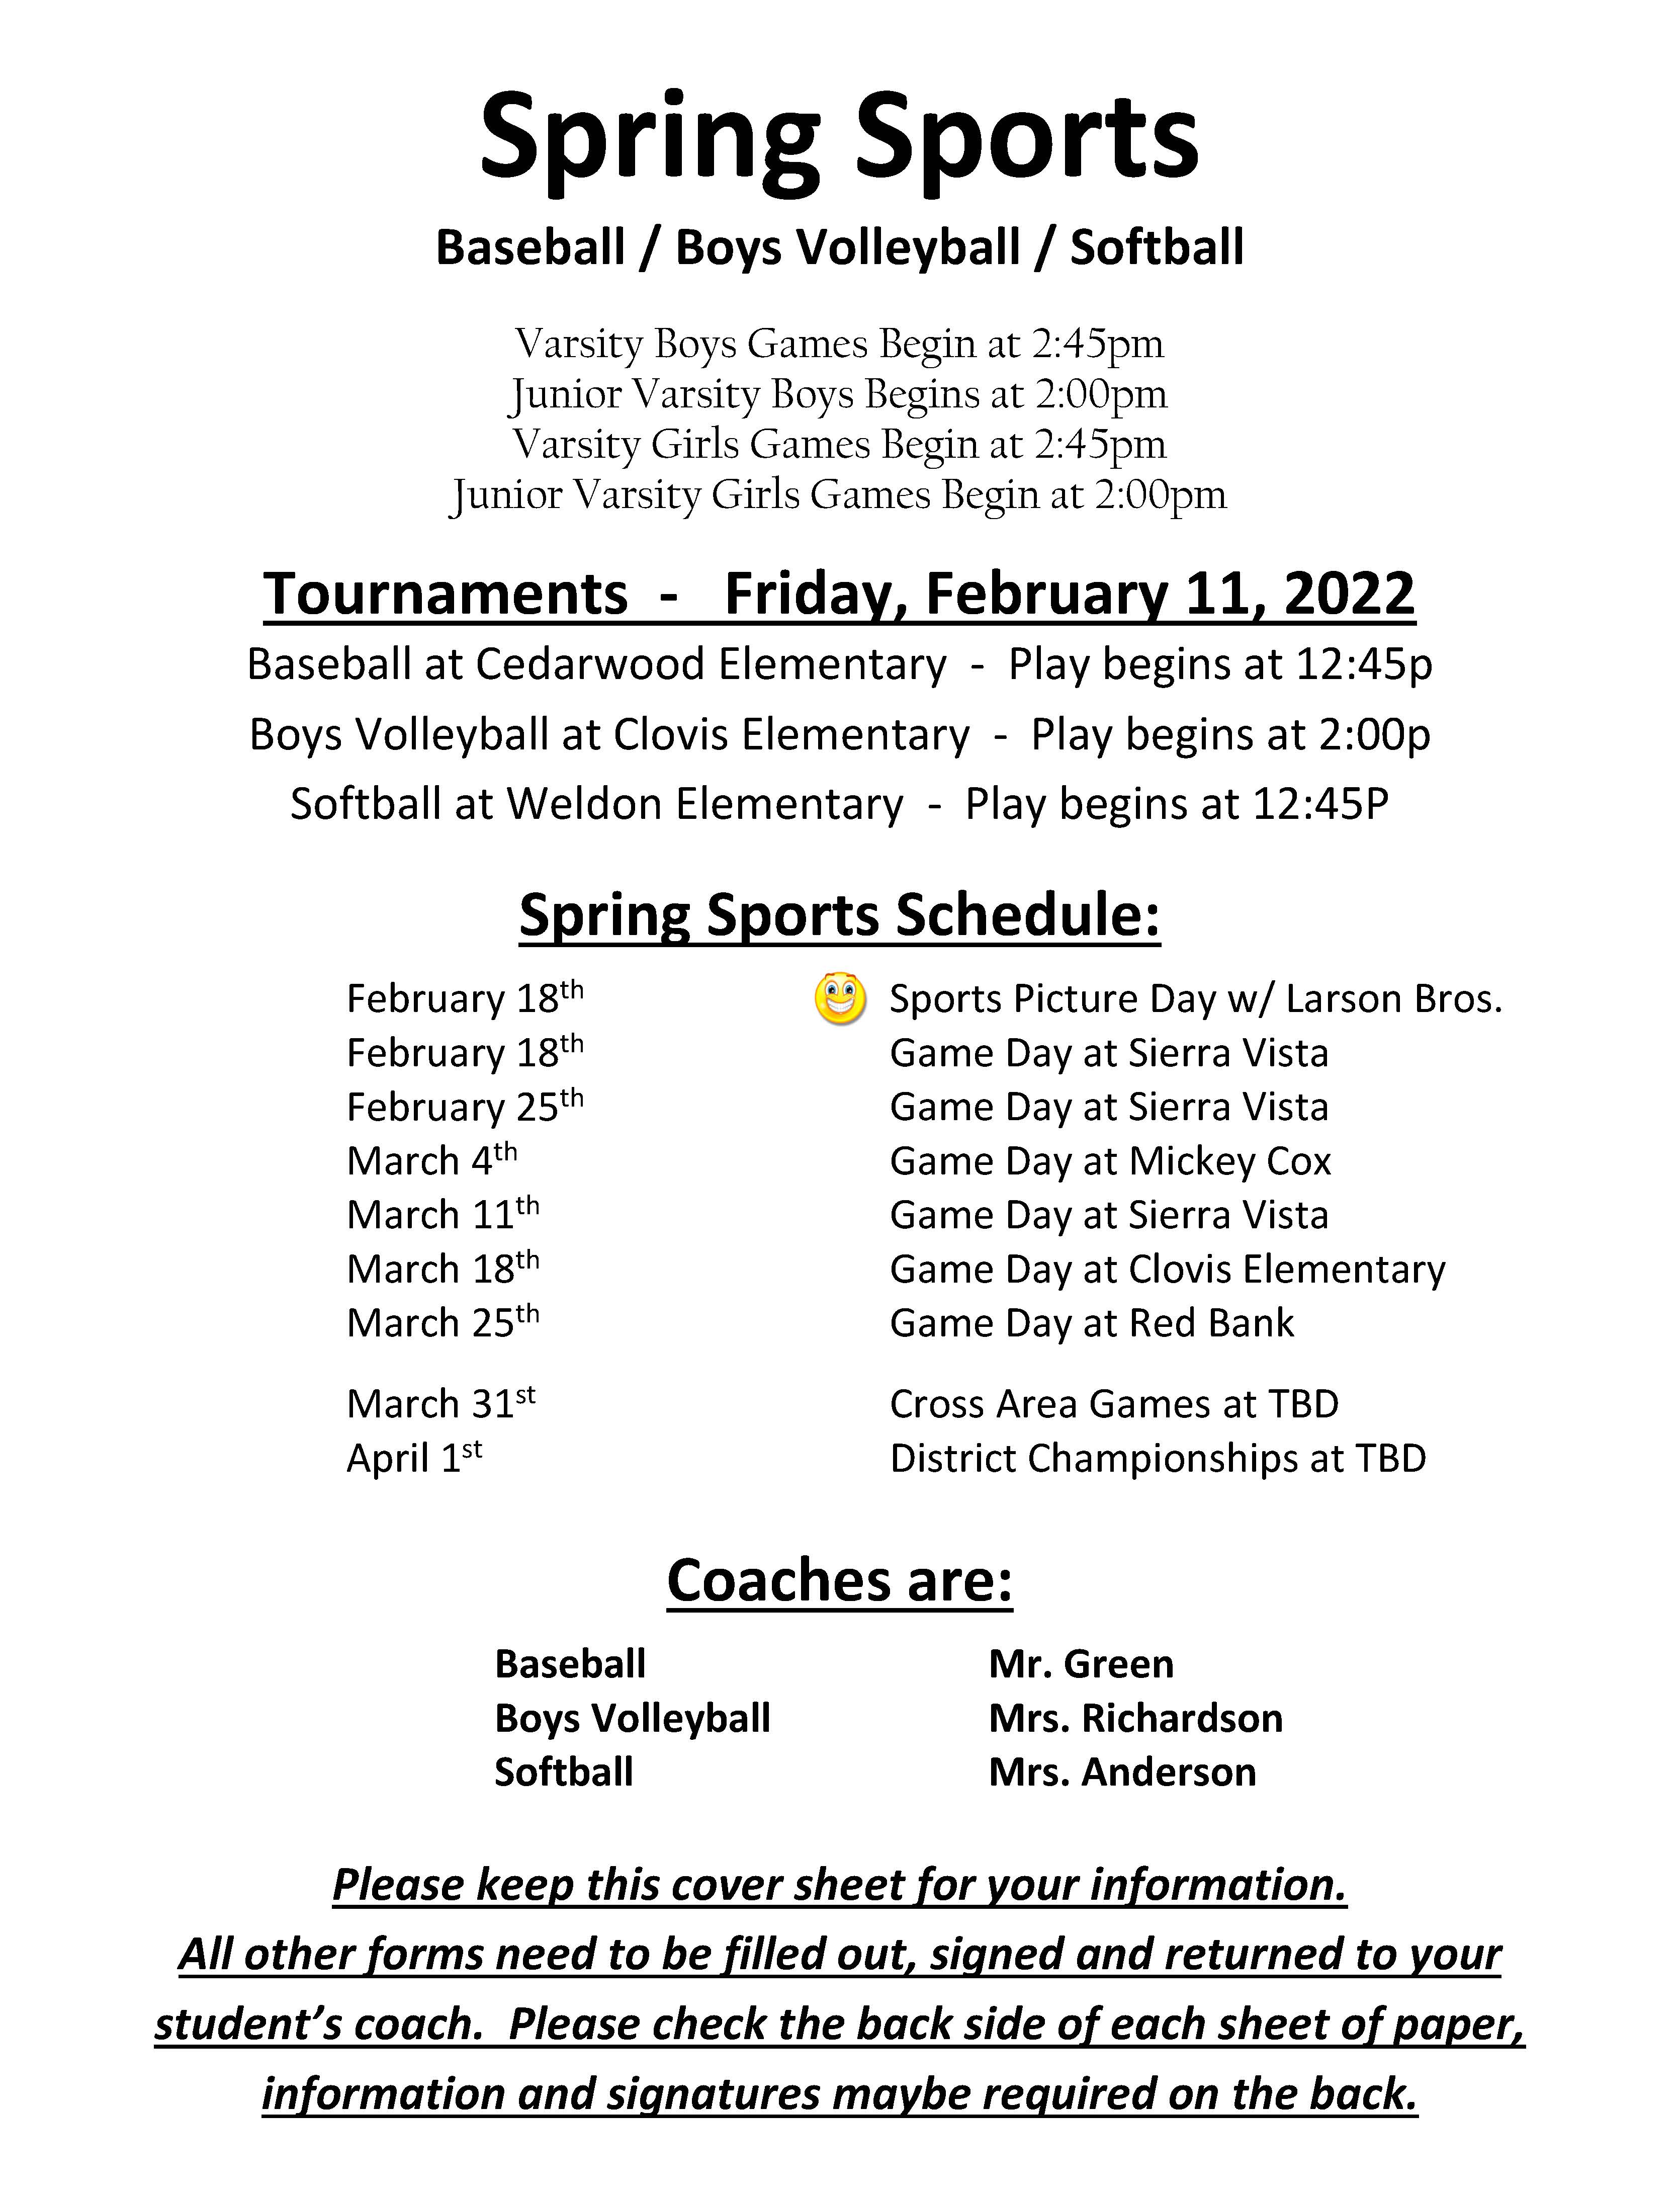 Spring Sports Flyer/Schedule